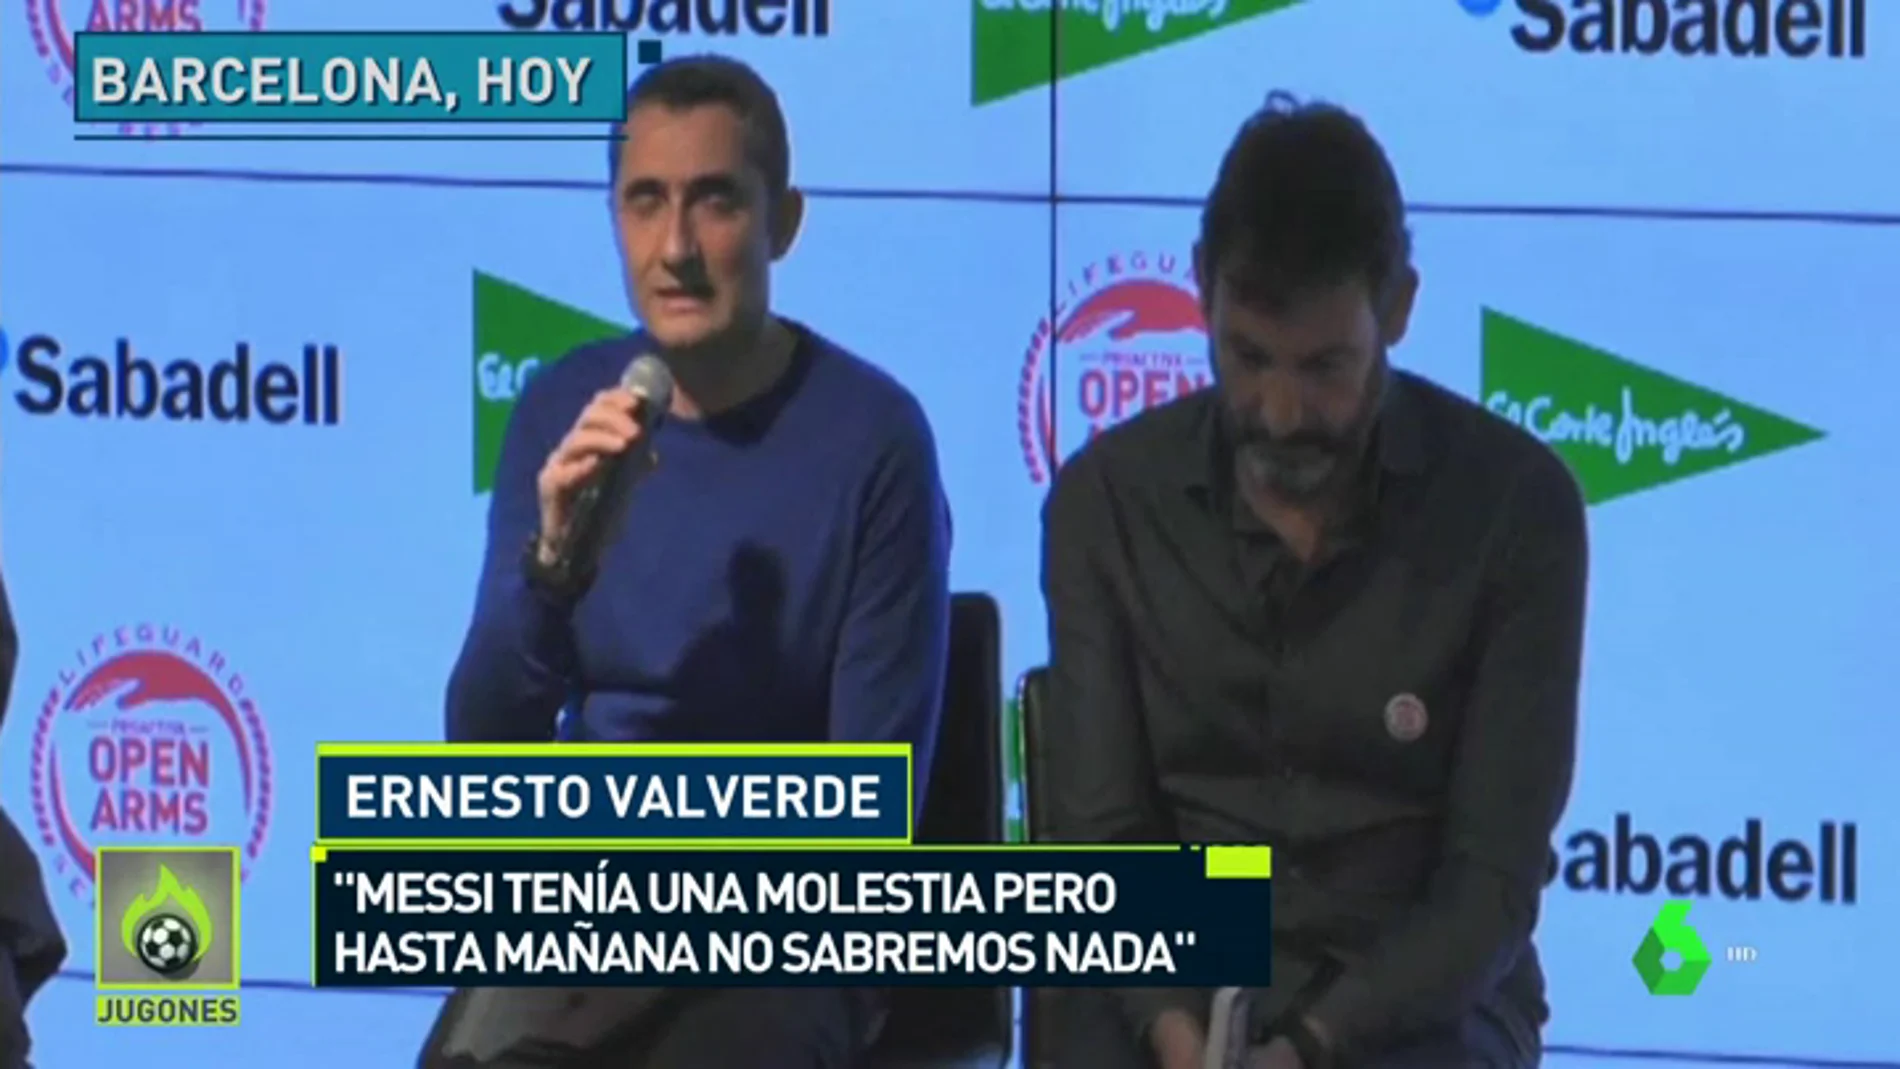 Valverde: "Messi tiene pequeñas molestias, pero nada importante. Estoy tranquilo" 